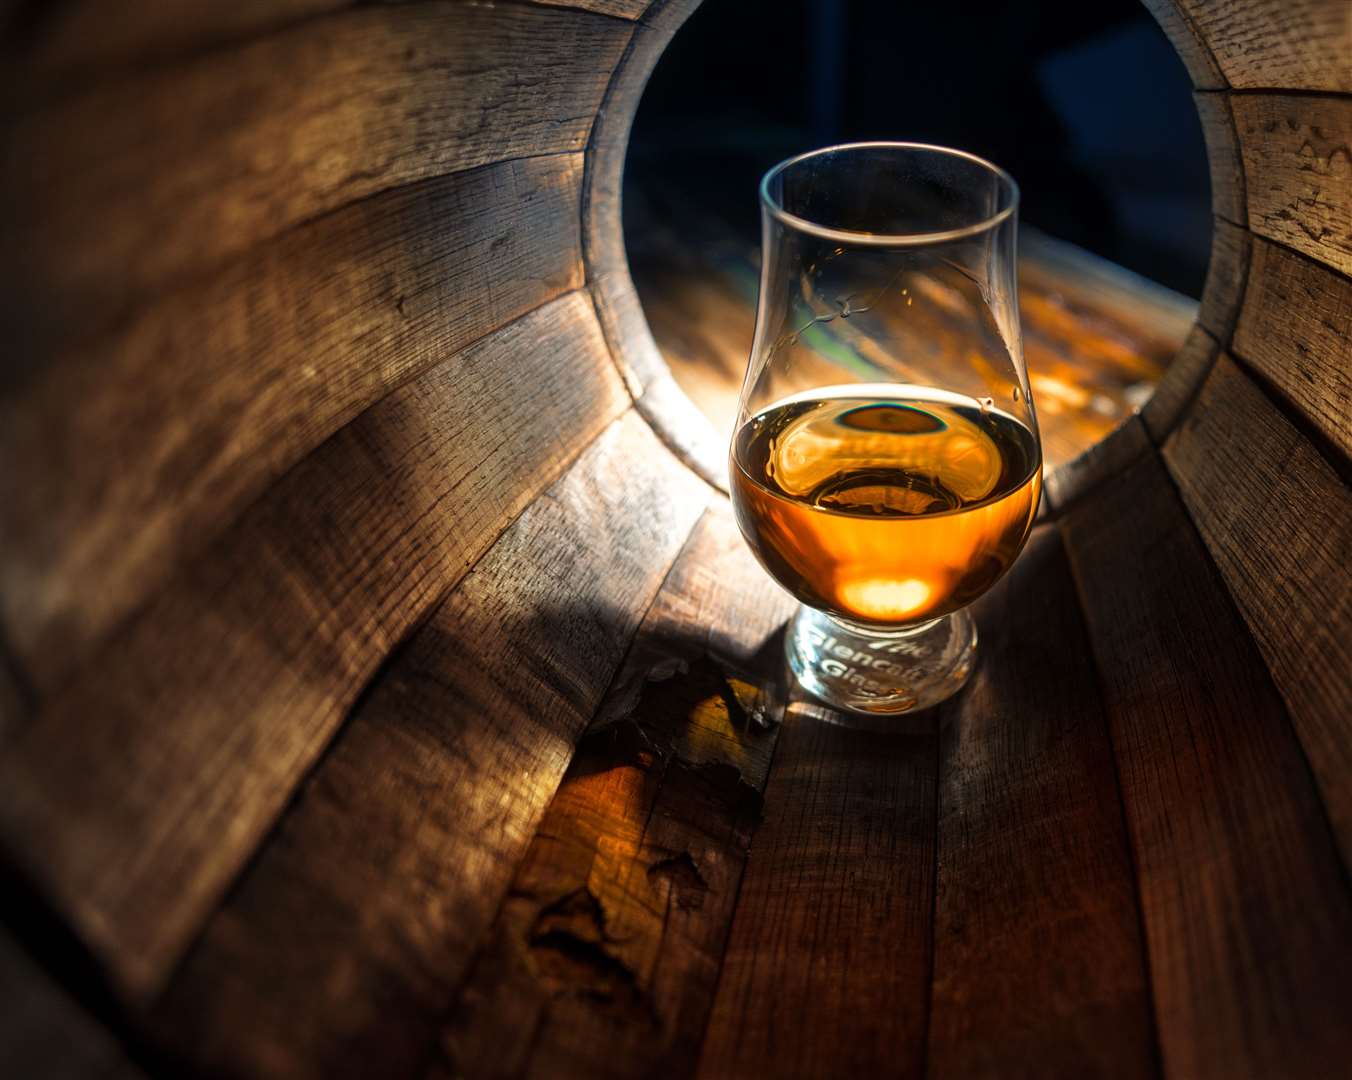 A glass of whisky in oak barrels.